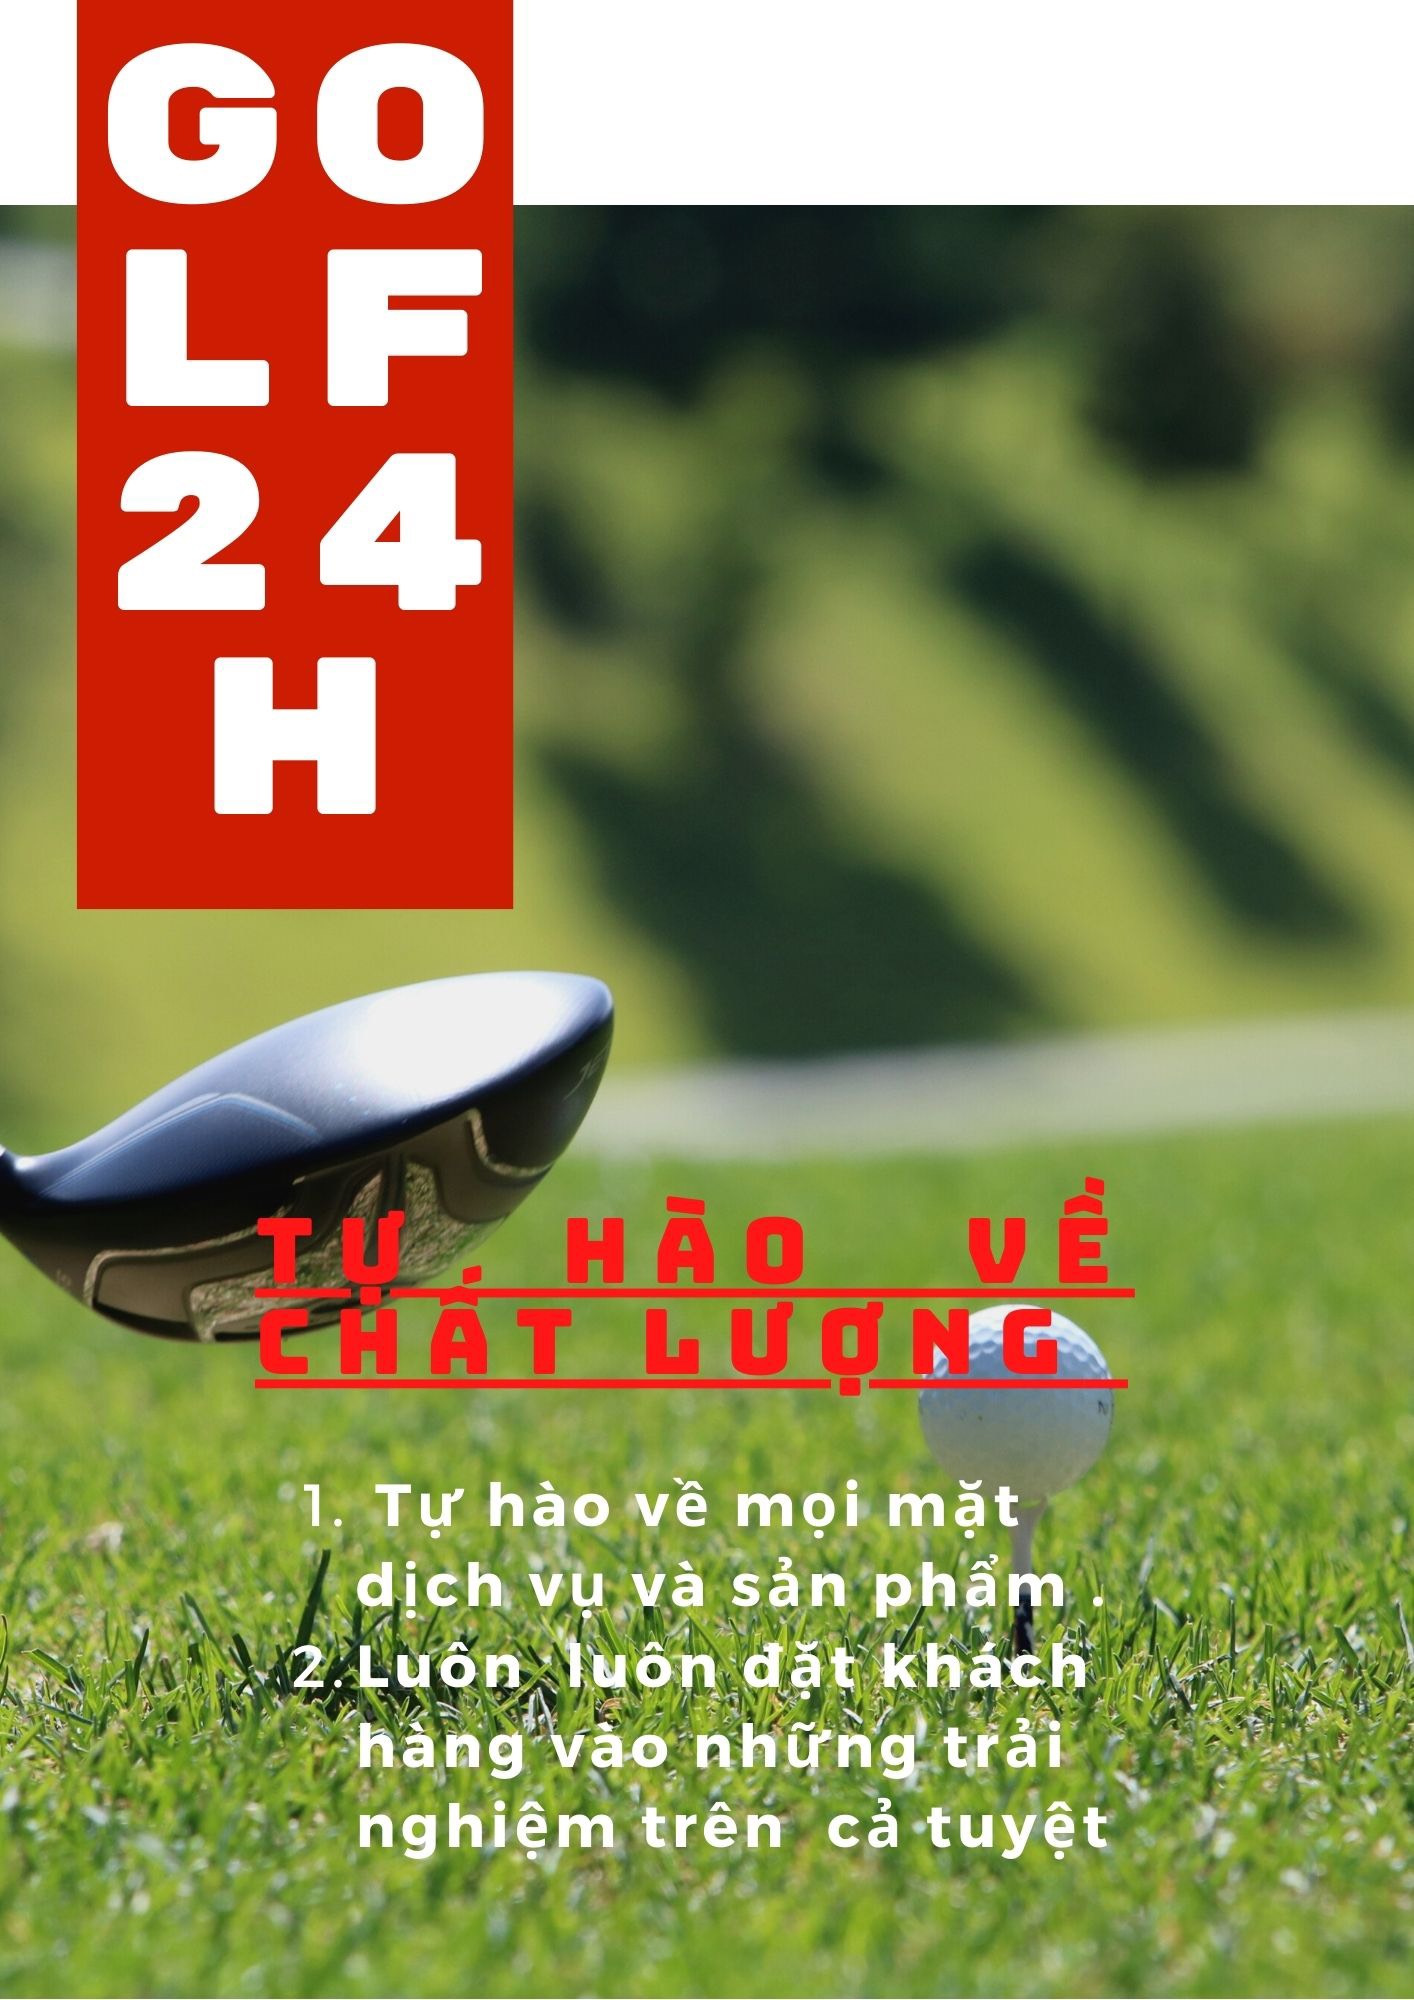 Golf24h.net tự hào về chất lượng 